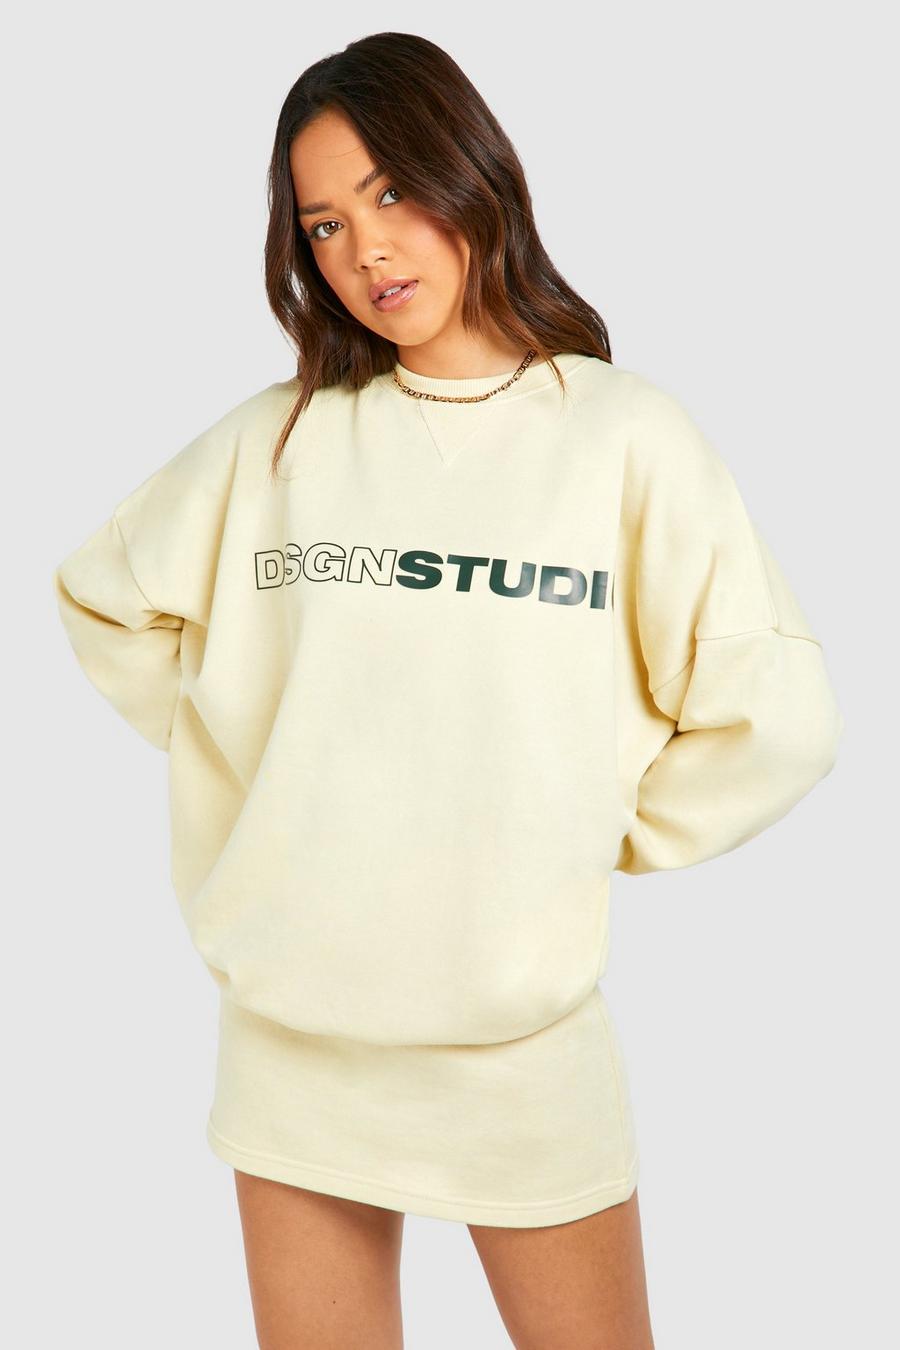 Oversize Sweatshirt mit Dsgn Studio Print, Lemon